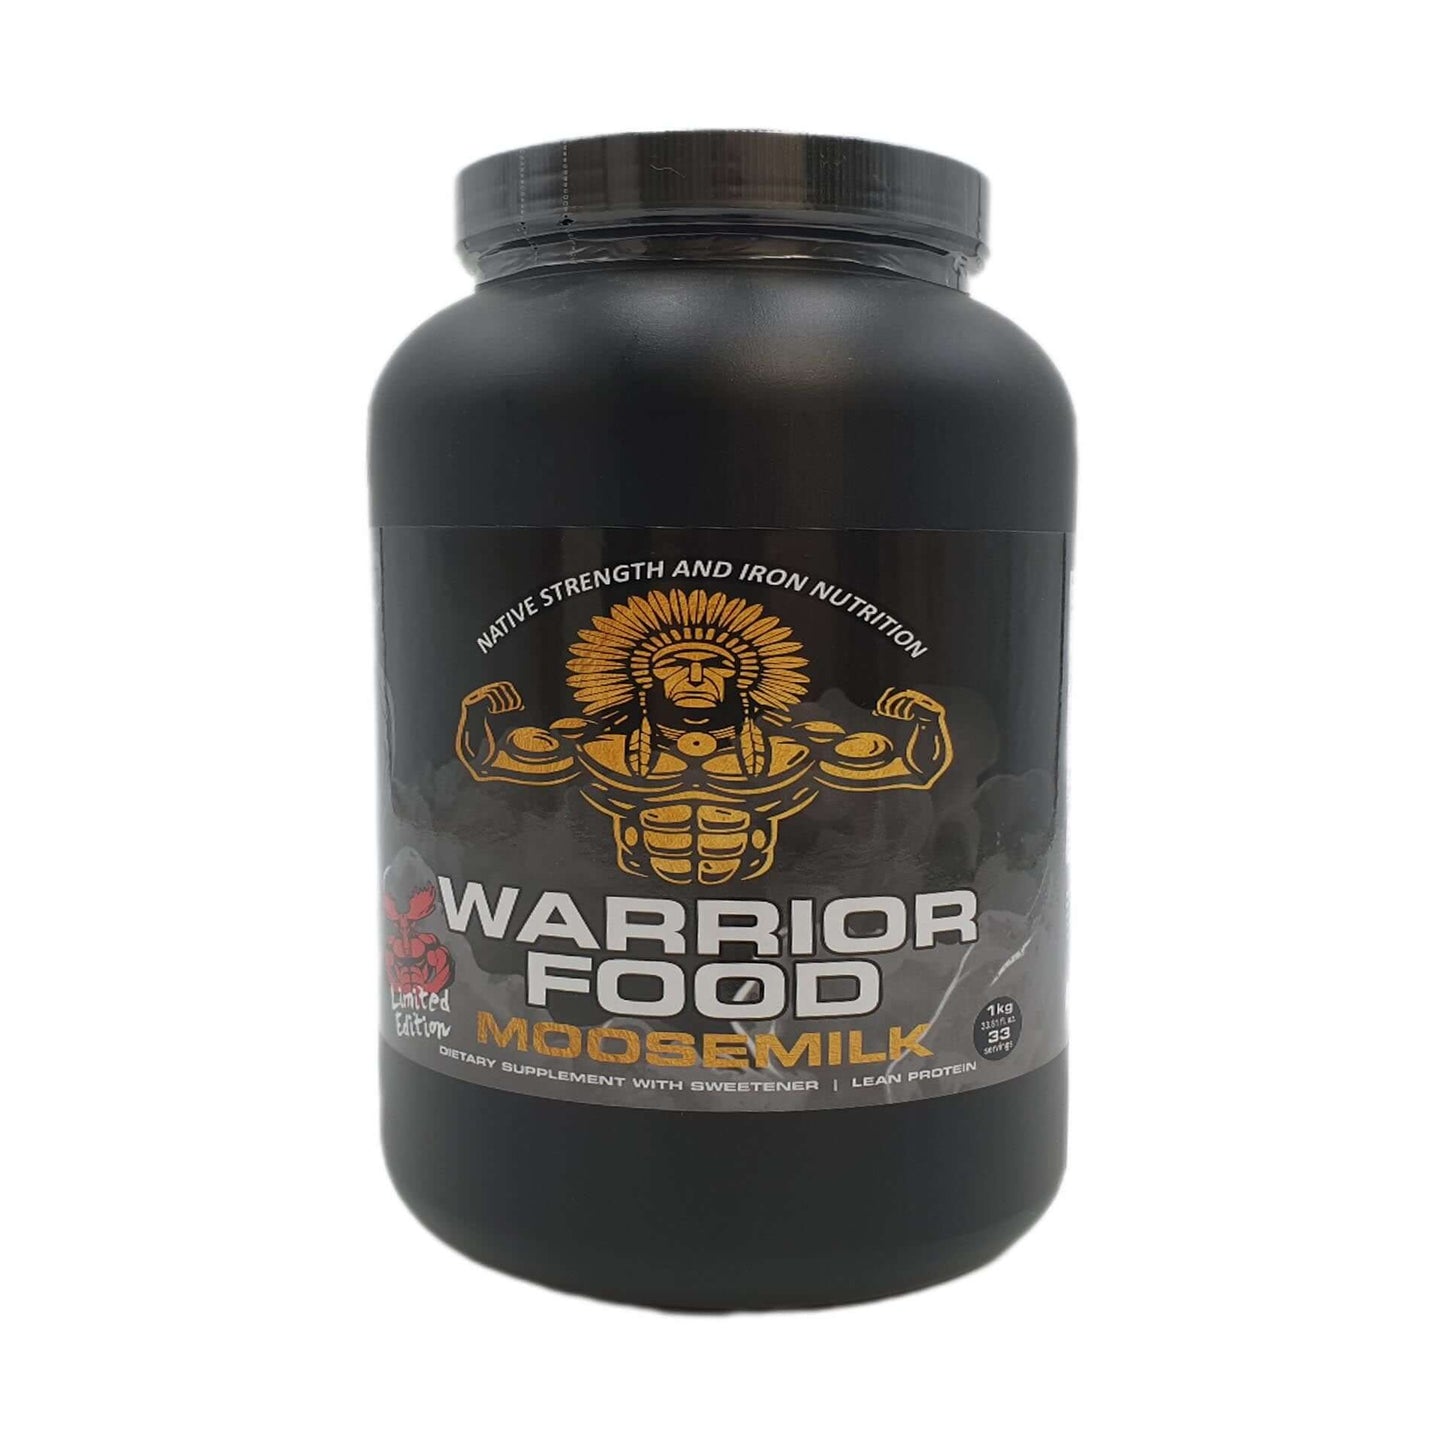 Warrior Food Lean Protein Powder